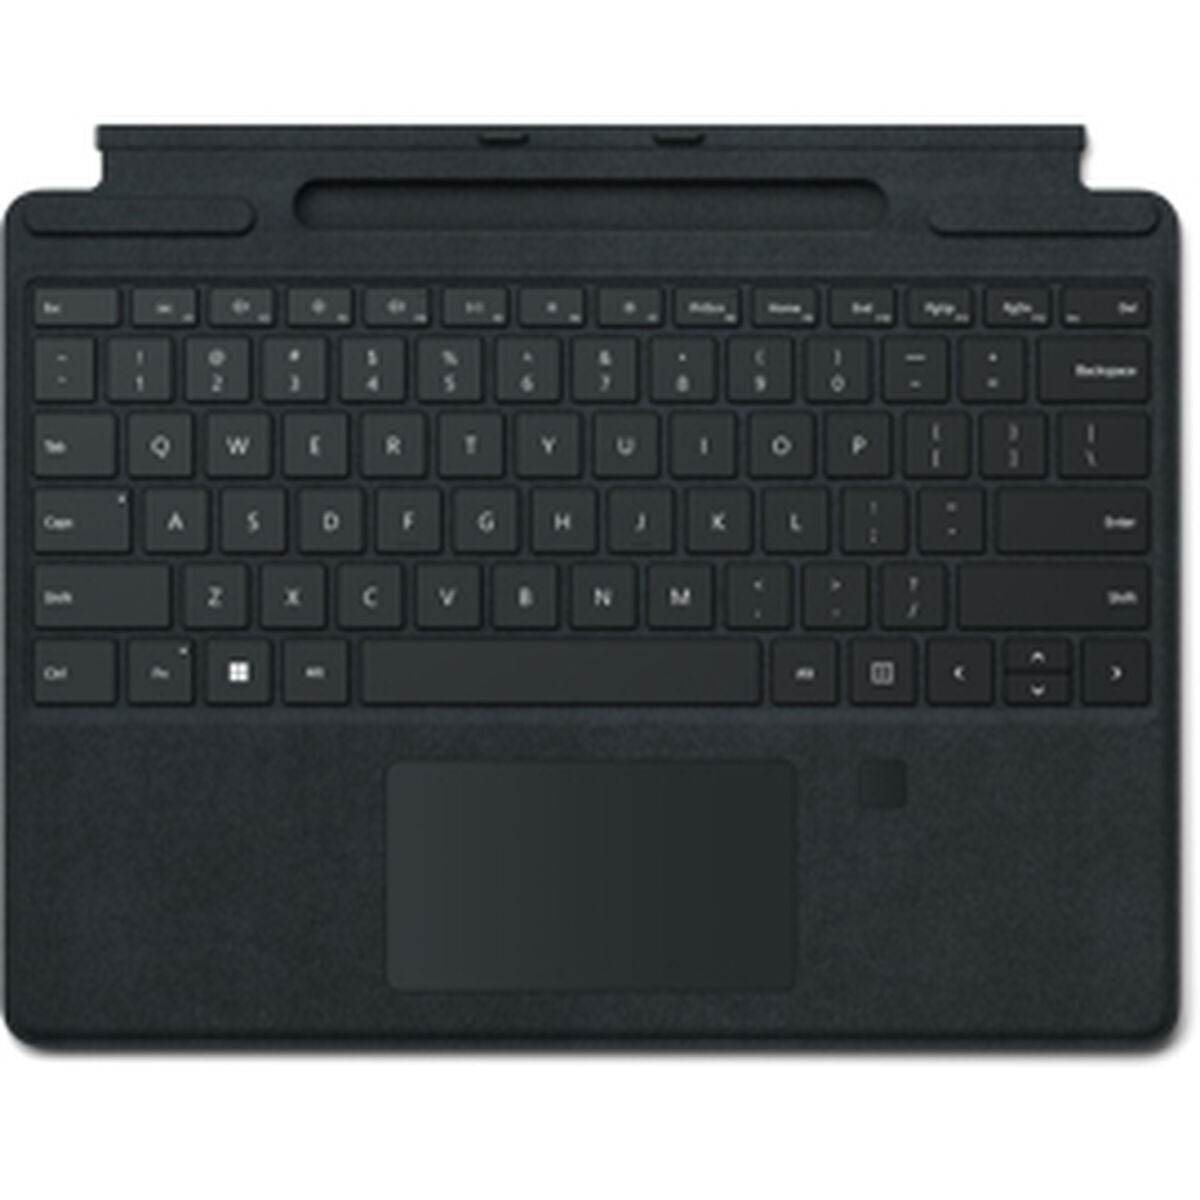 Tastiera Bluetooth con Supporto per Tablet Microsoft 8XG-00012 Qwerty in Spagnolo - Disponibile in 3-4 giorni lavorativi